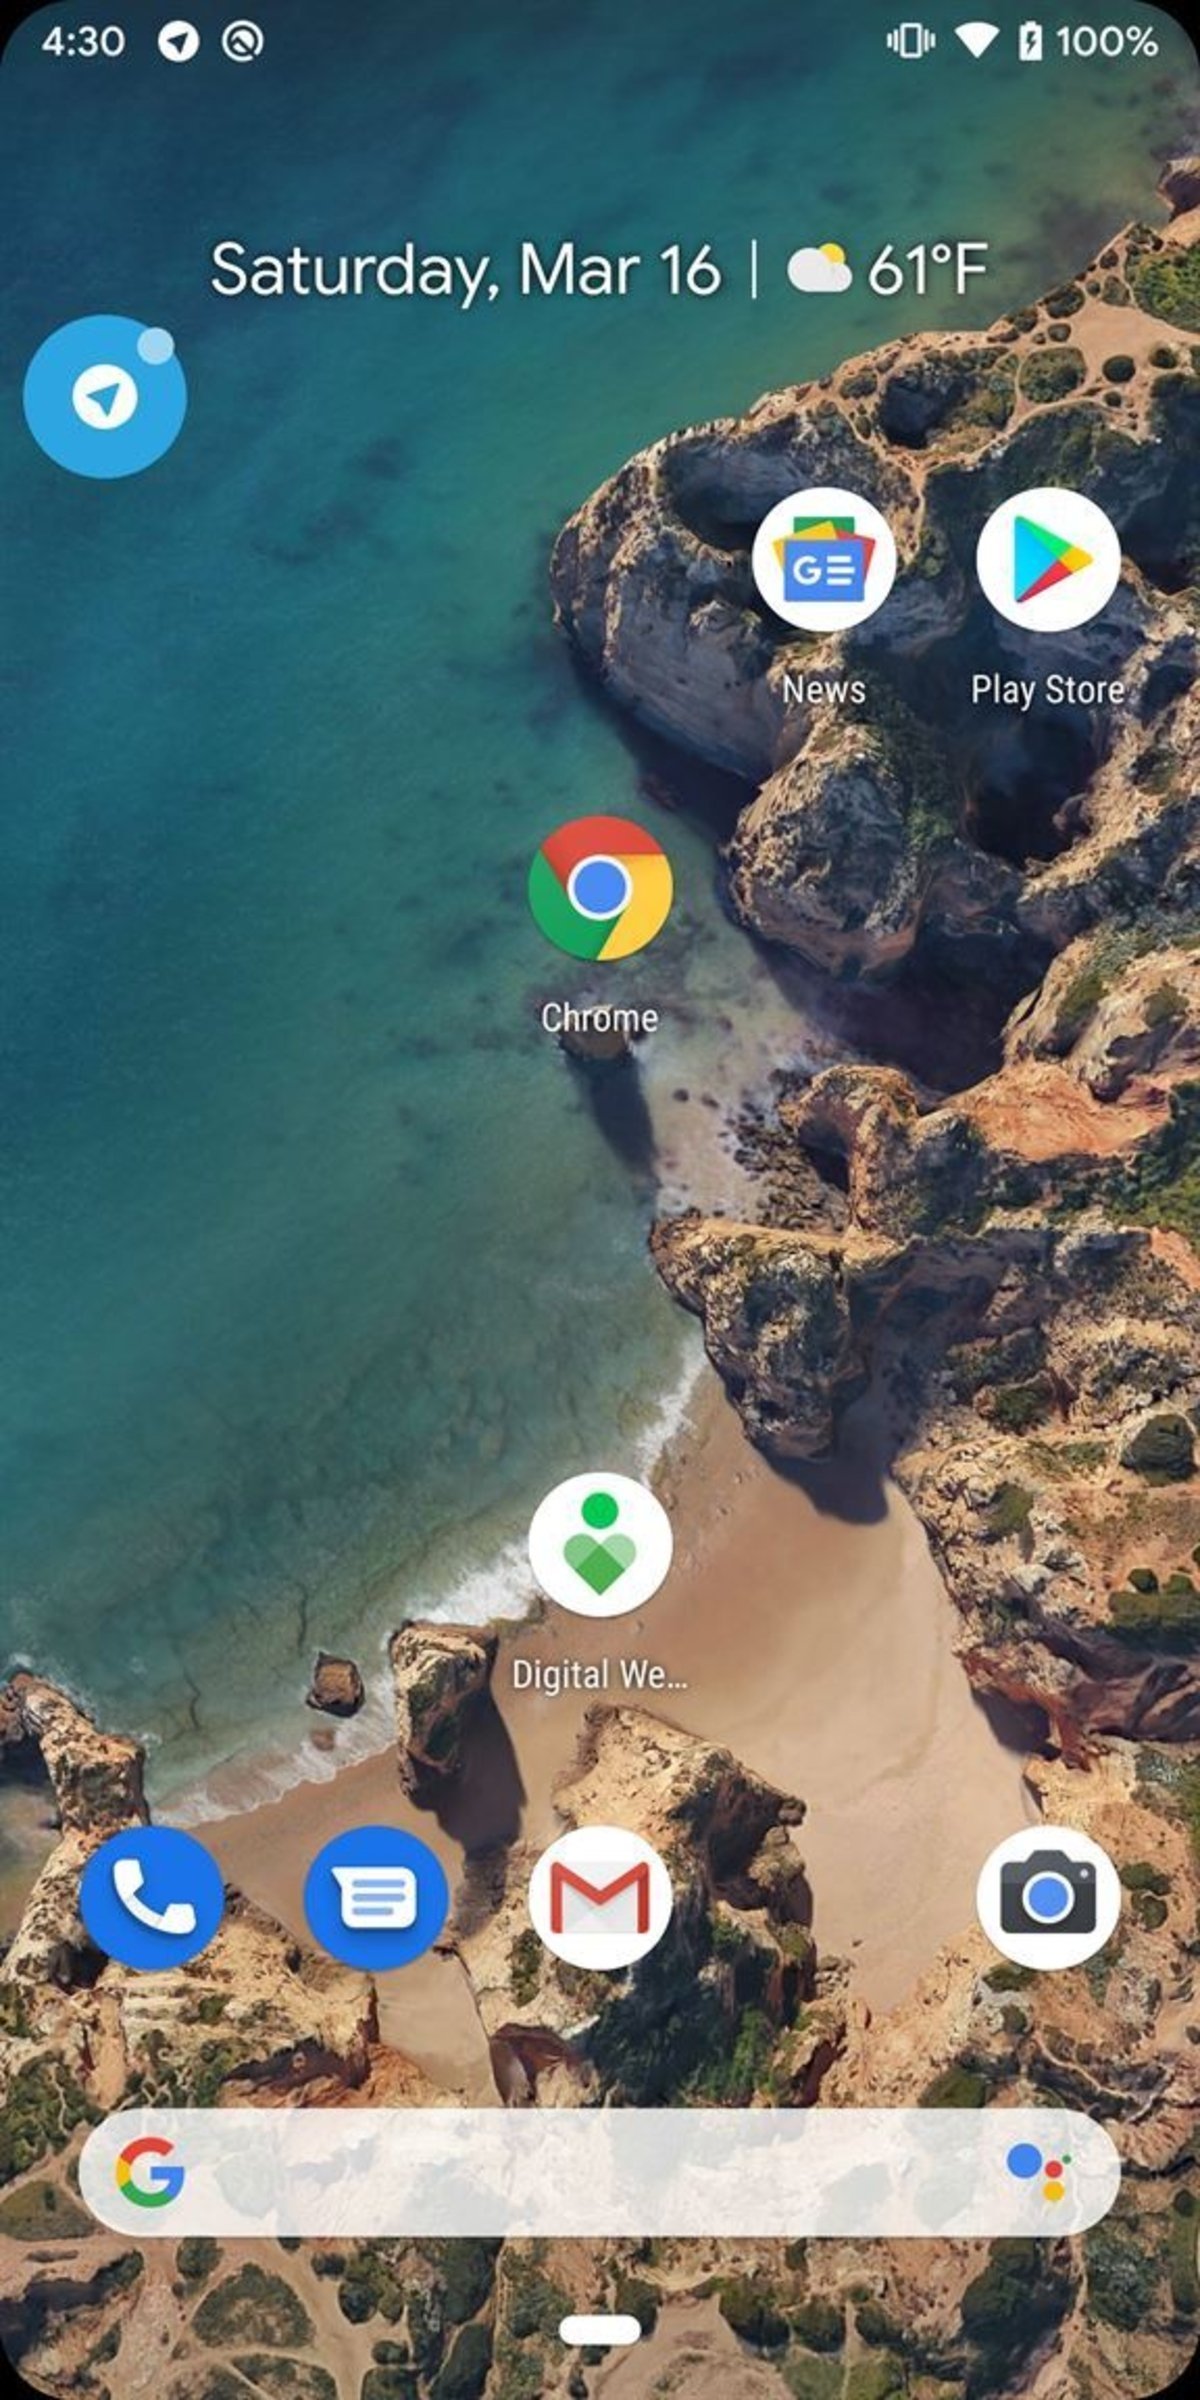 Android Q podría cambiar por completo las notificaciones: llegan las burbujas flotantes para todas las apps